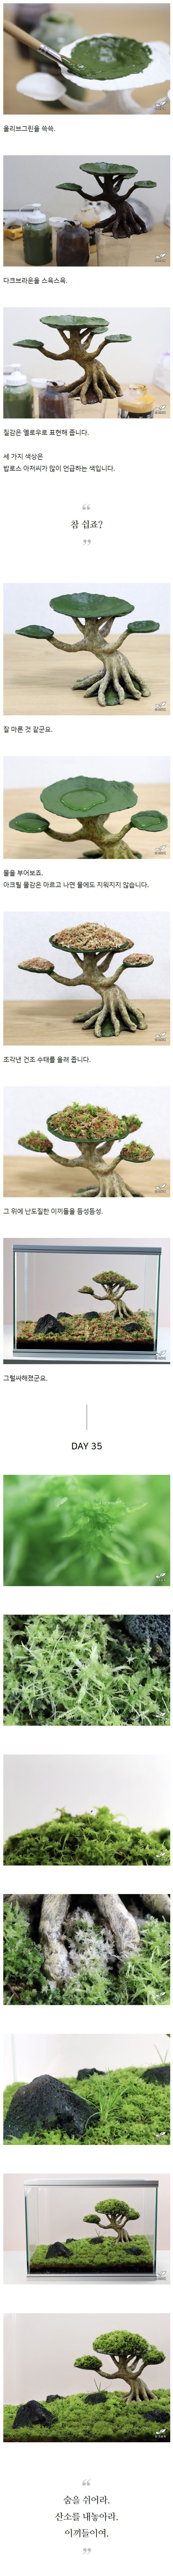 moss06.jpg 한국 드루이드의 재능 낭비.jpg